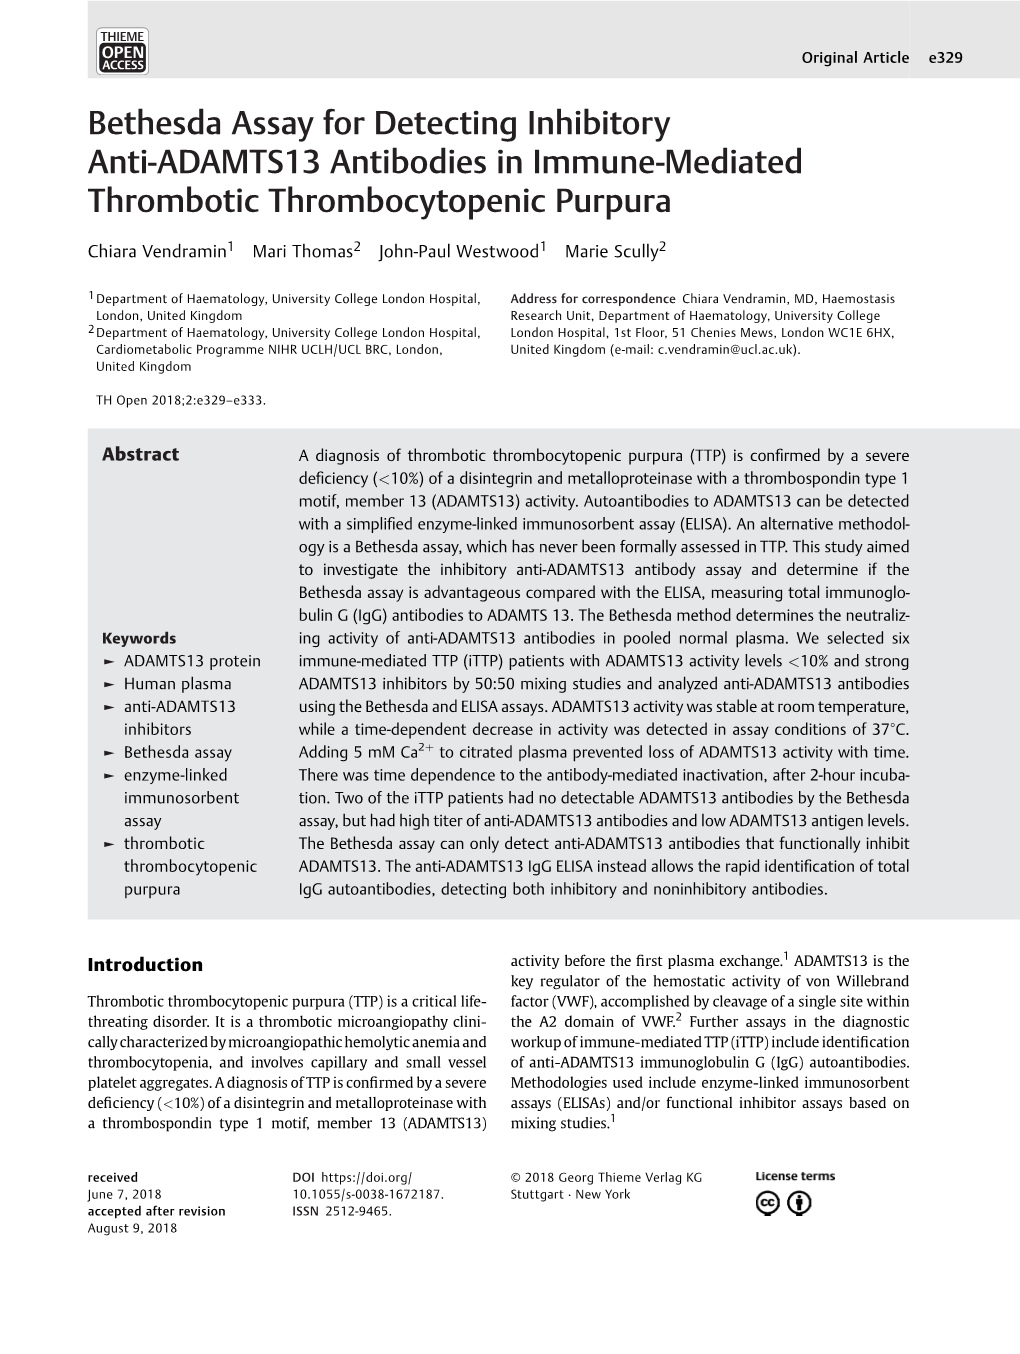 Bethesda Assay for Detecting Inhibitory Anti-ADAMTS13 Antibodies in Immune-Mediated Thrombotic Thrombocytopenic Purpura